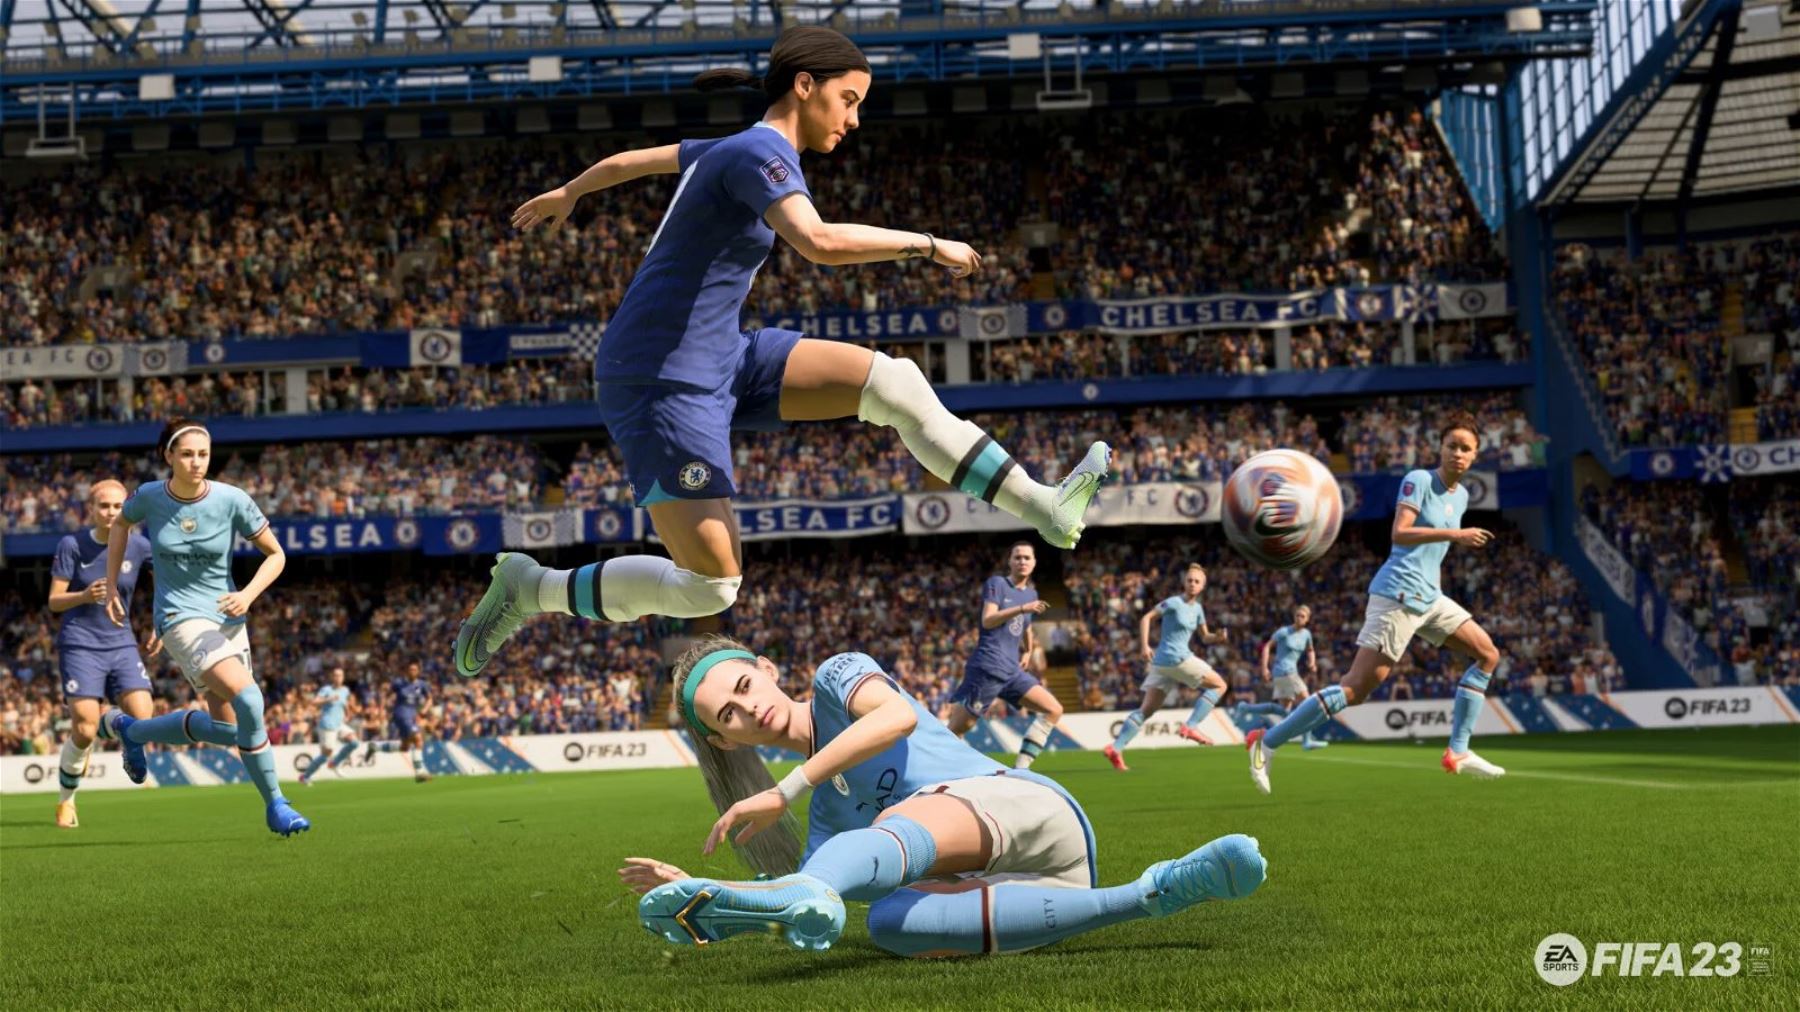 El videojuego FIFA 23, desarrollado por Electronic Arts (EA) Sports, que saldrá a la venta el 30 de setiembre, incluirá a clubes de la Liga de Inglaterra y Francia